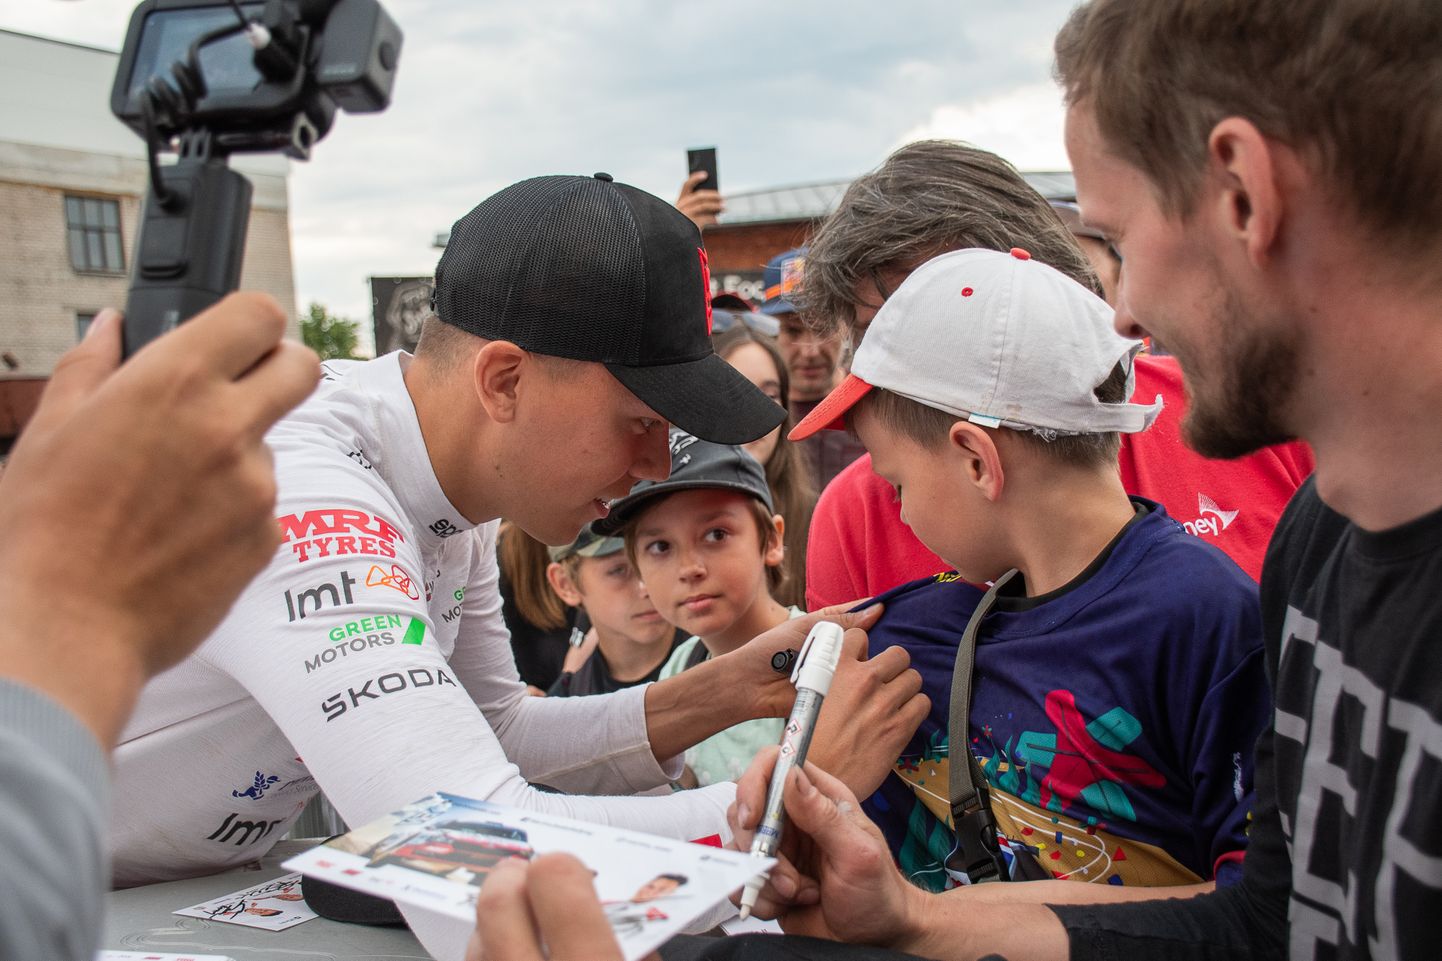 Rallija braucējs Mārtiņš Sesks sniedz autogrāgus Eiropas rallija čempionāta (ERC) sezonas ceturtā posma "Tet Rally Liepāja" atklāšanas pasākumā Liepājā.